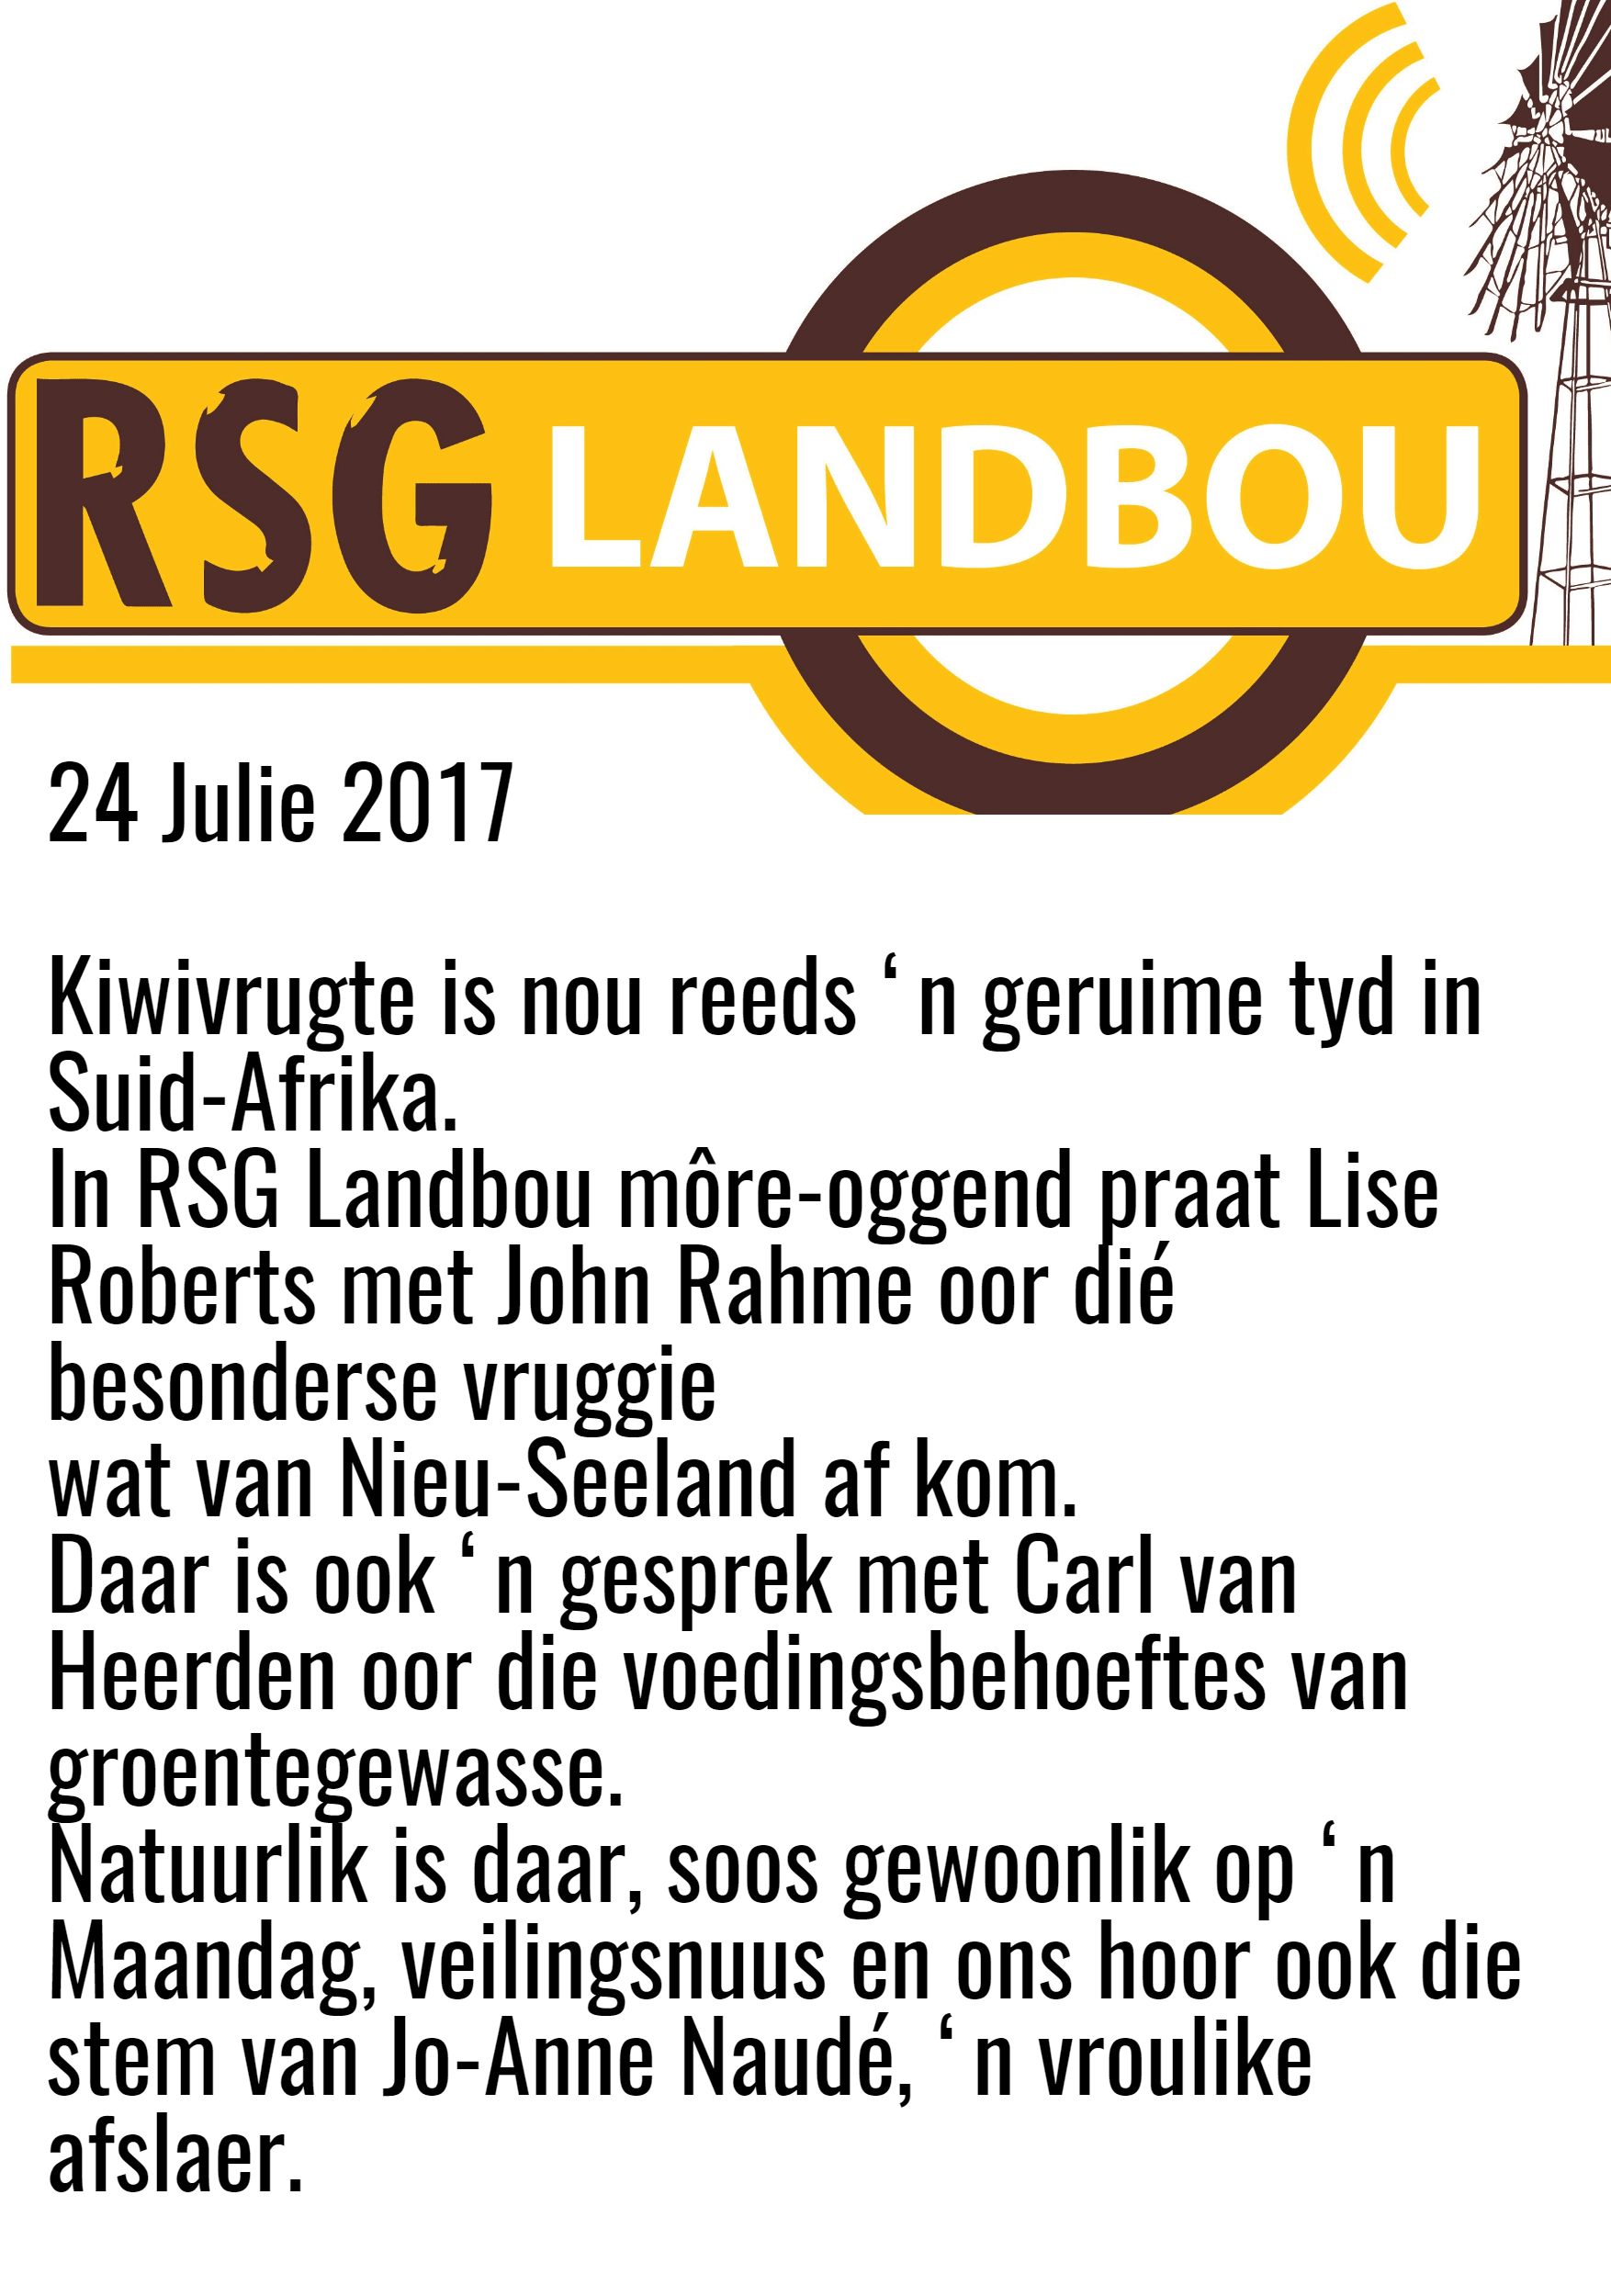 RSG Landbou Design 